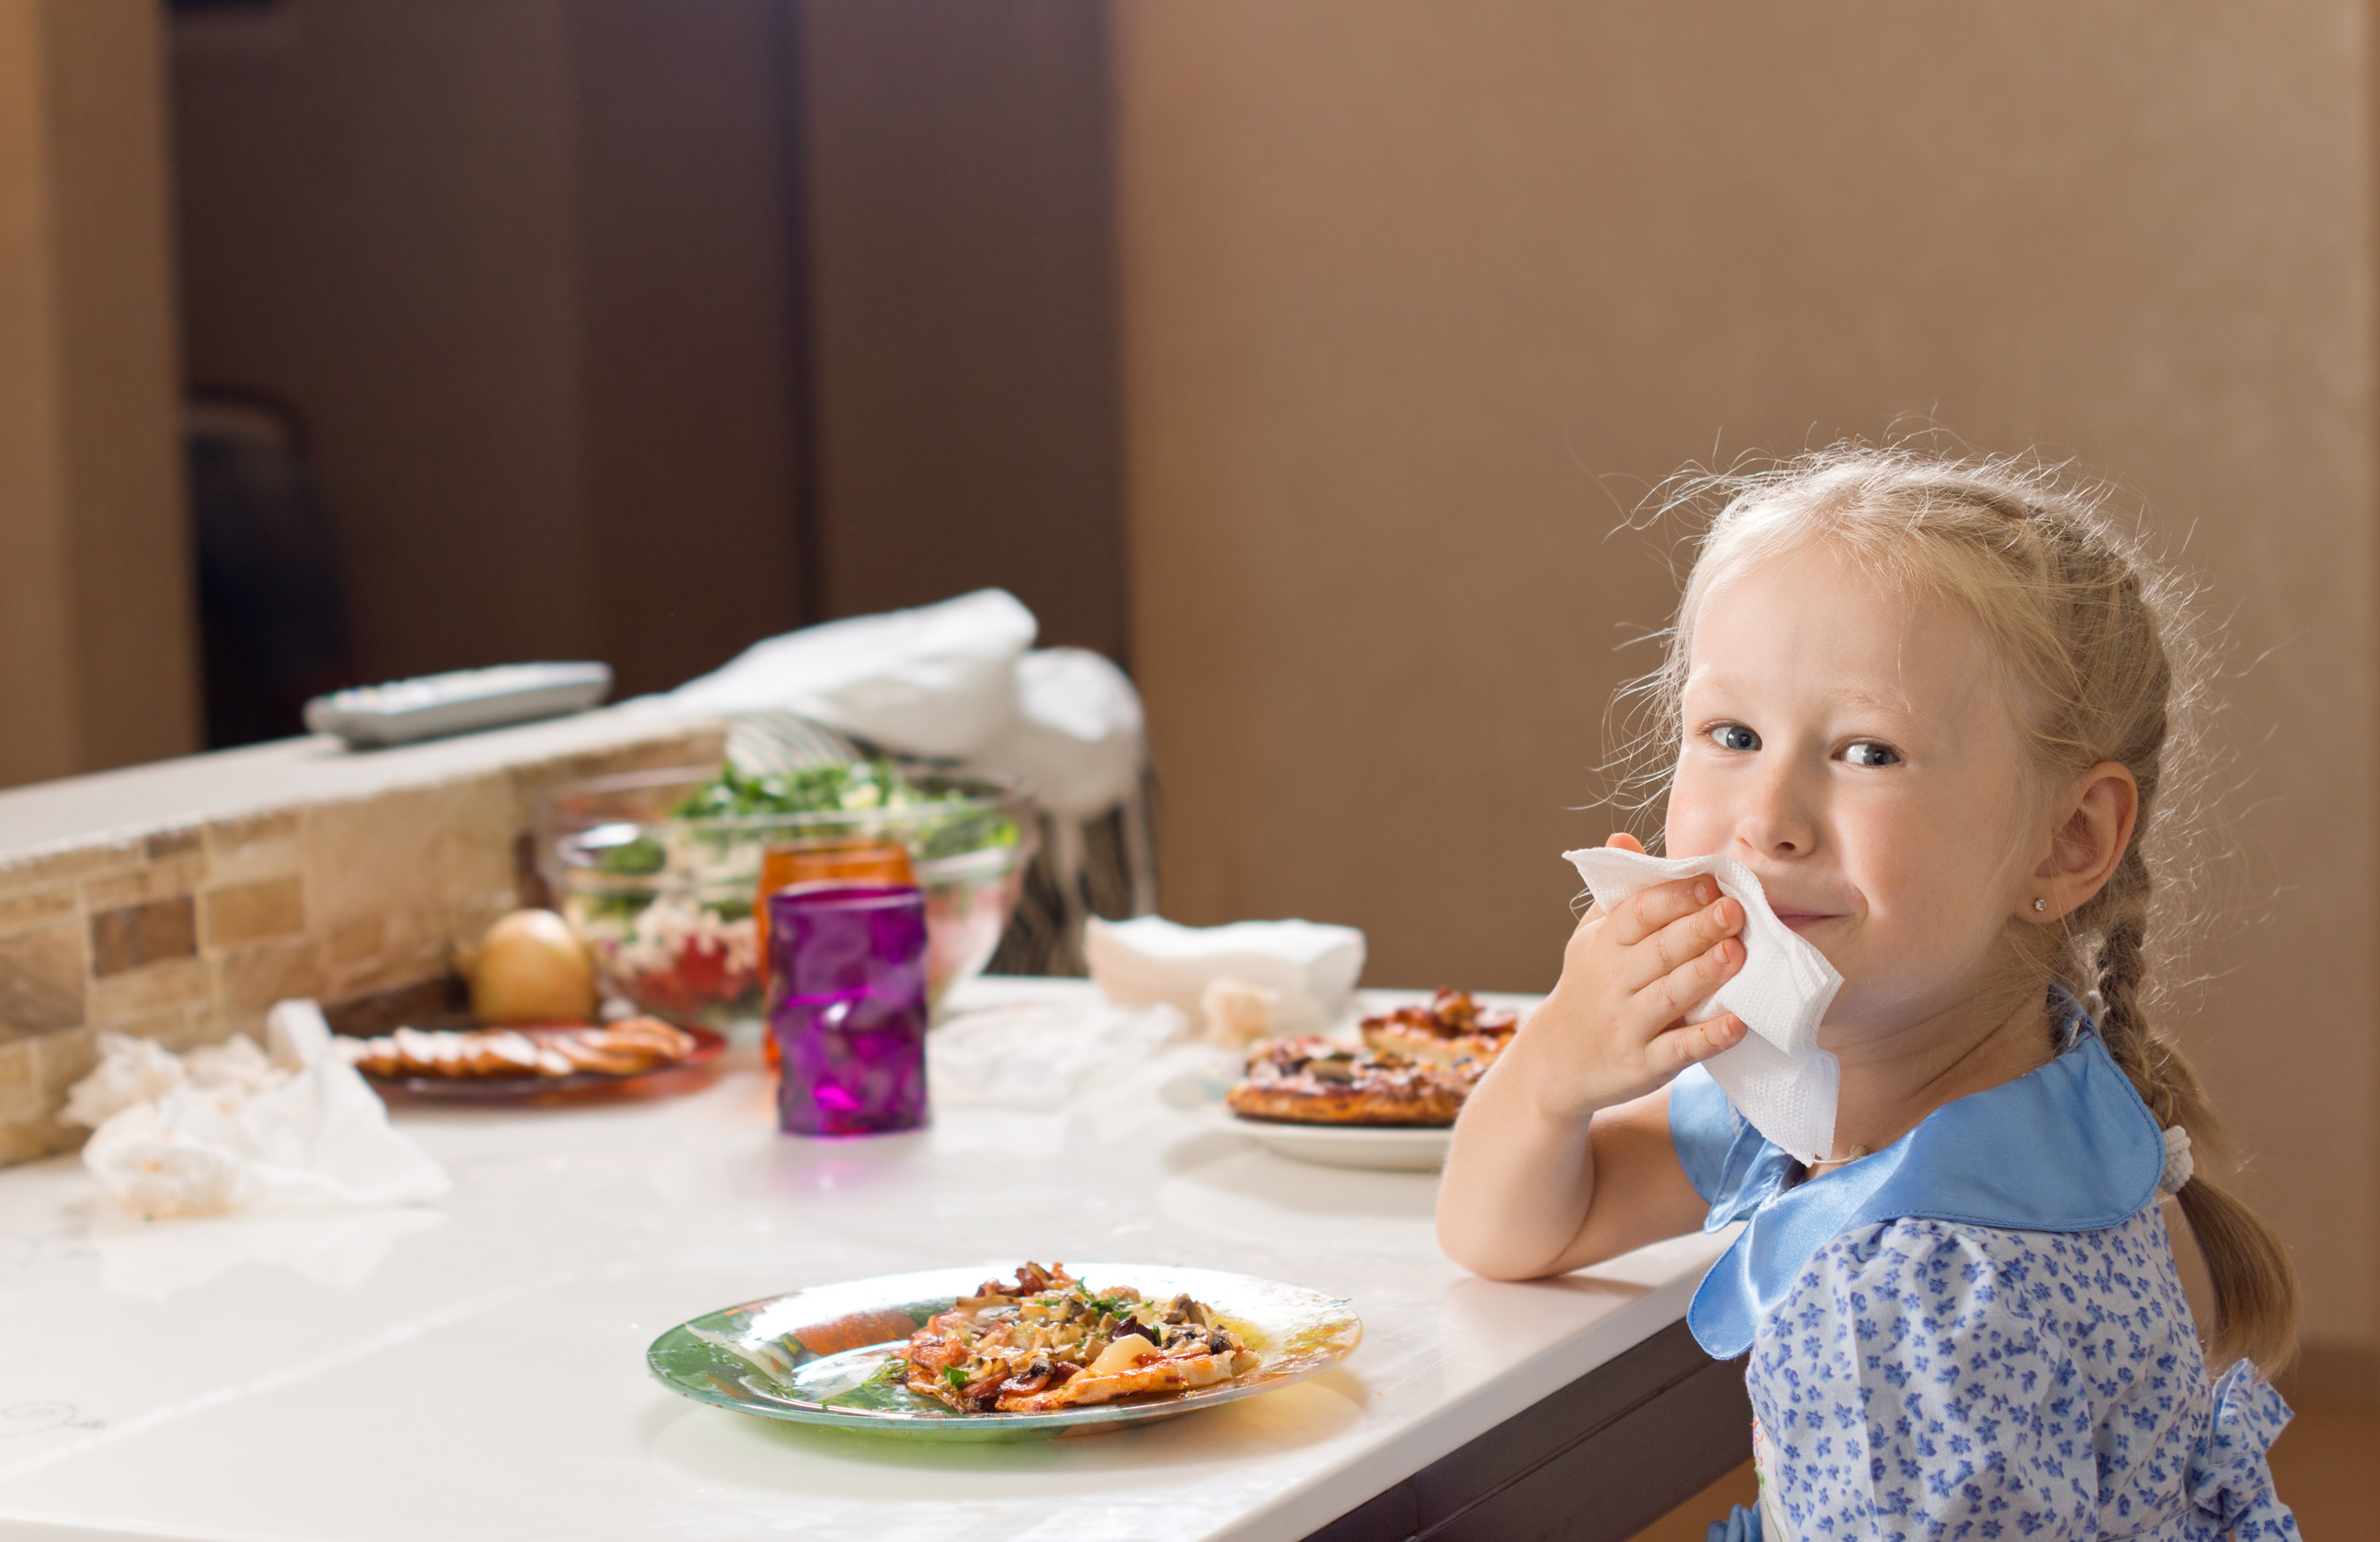 Toddler Lunch & Dinner Ideas • Capturing Parenthood